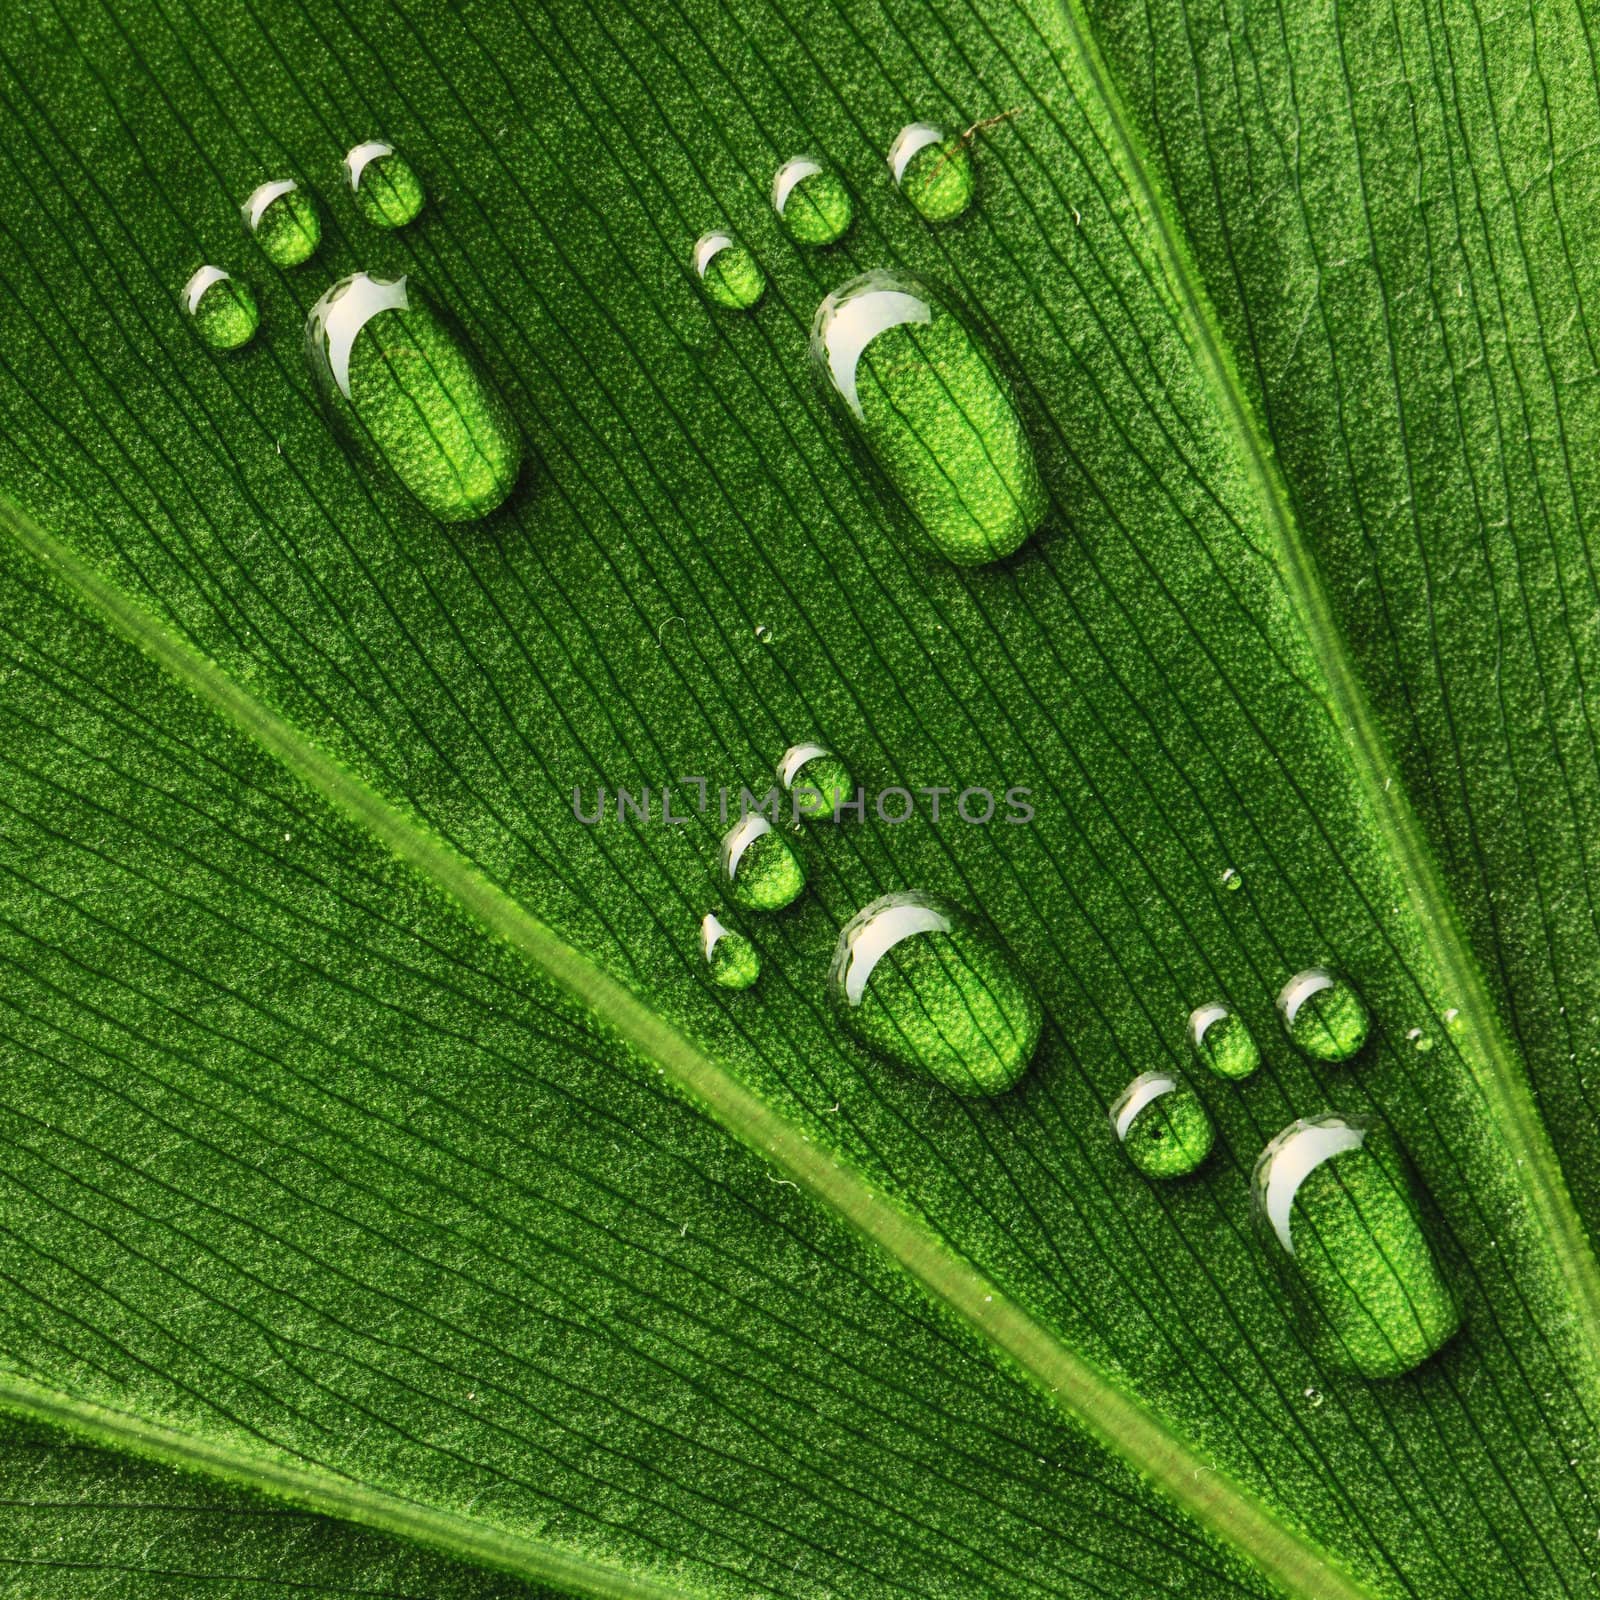 Water footprints on leaf by haveseen